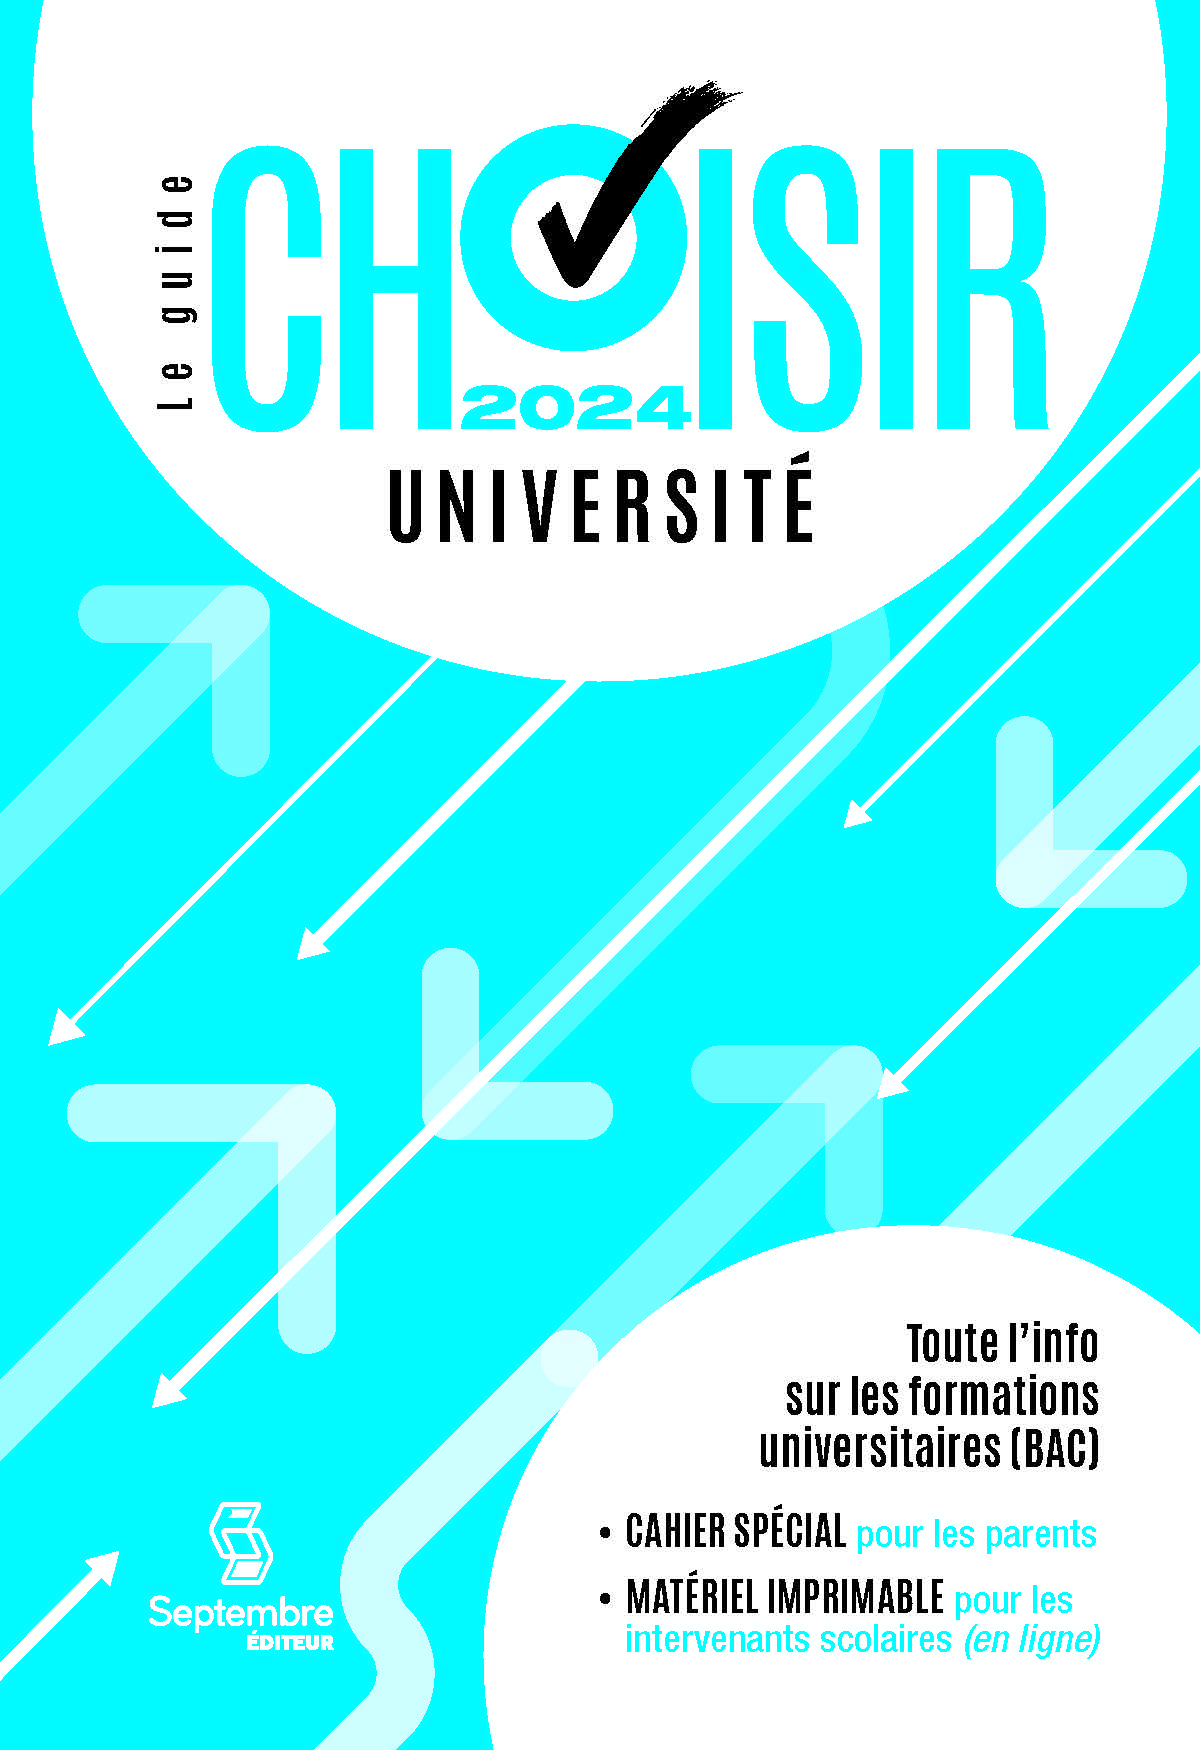 Guide Choisir - Université 2024